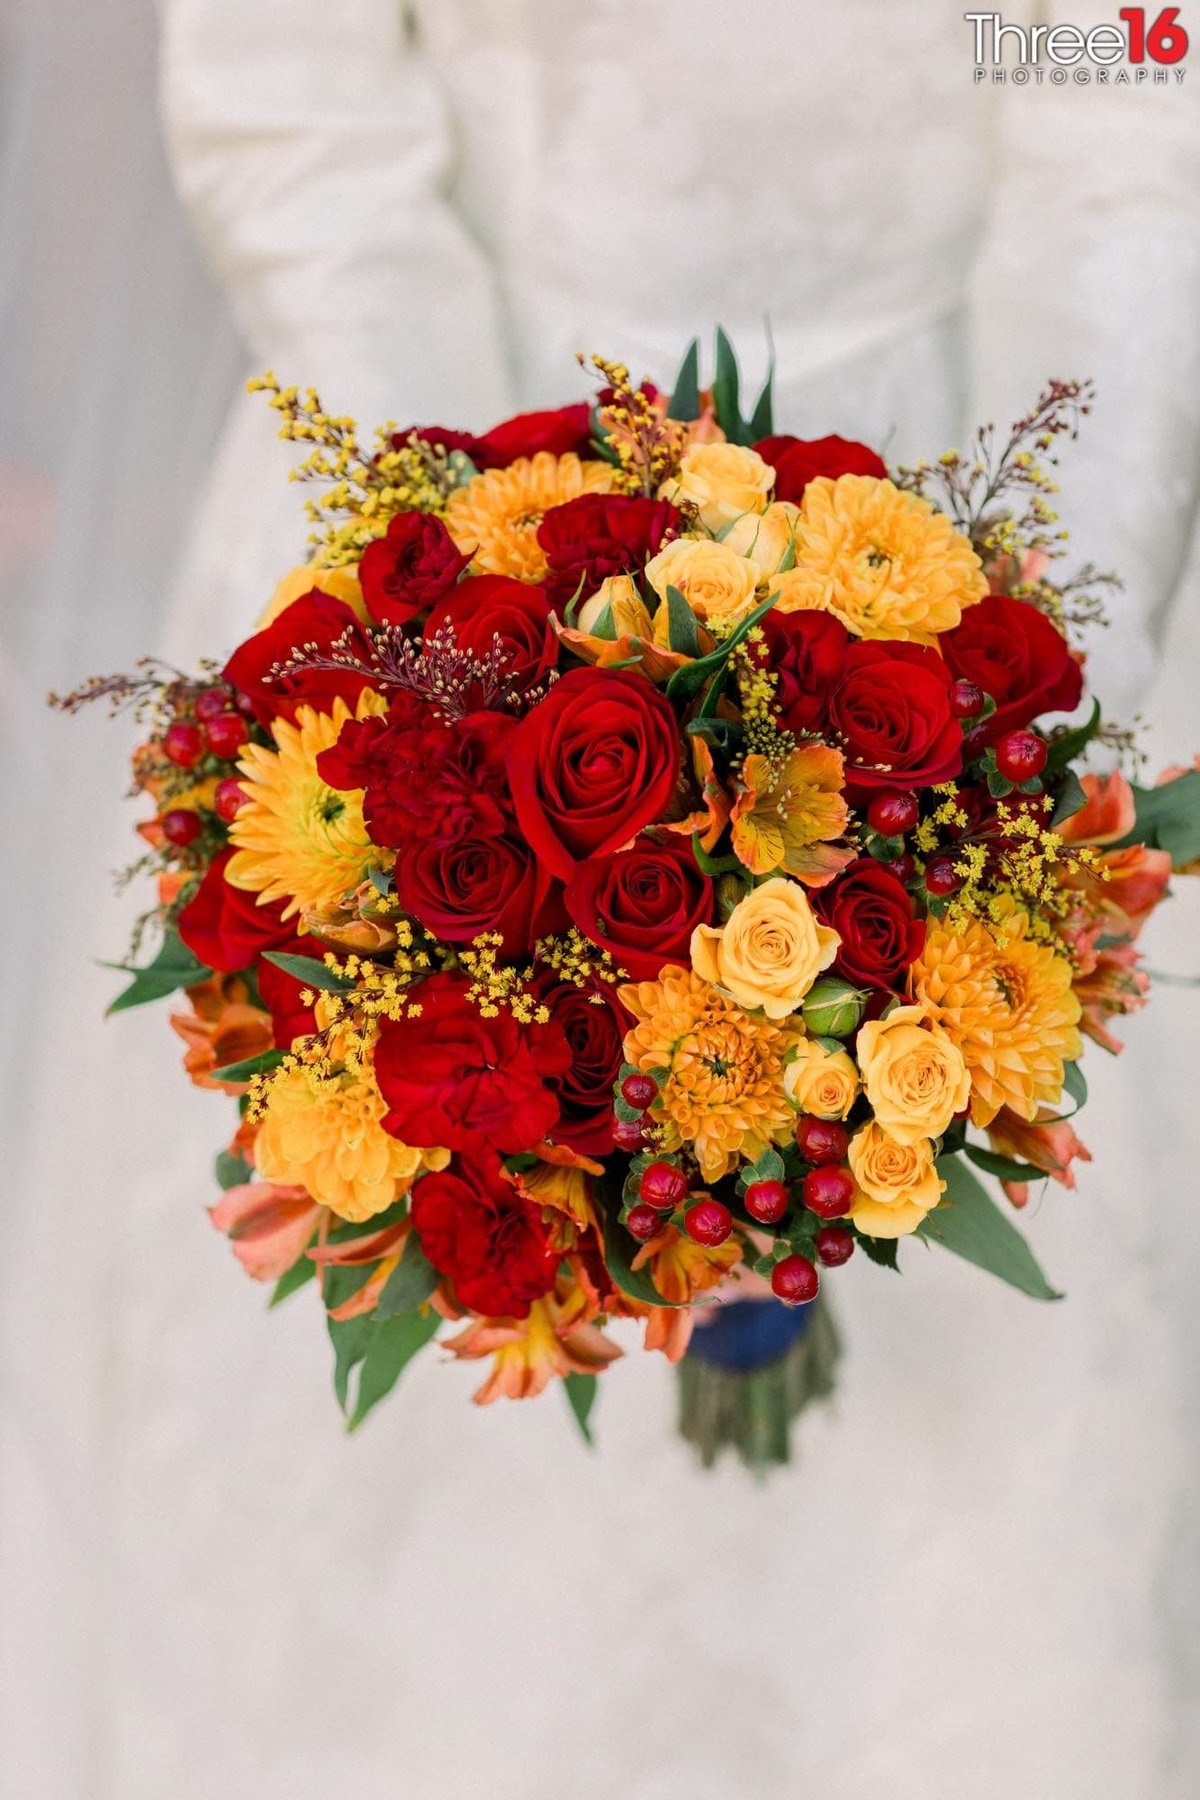 Bride's colorful bouquet